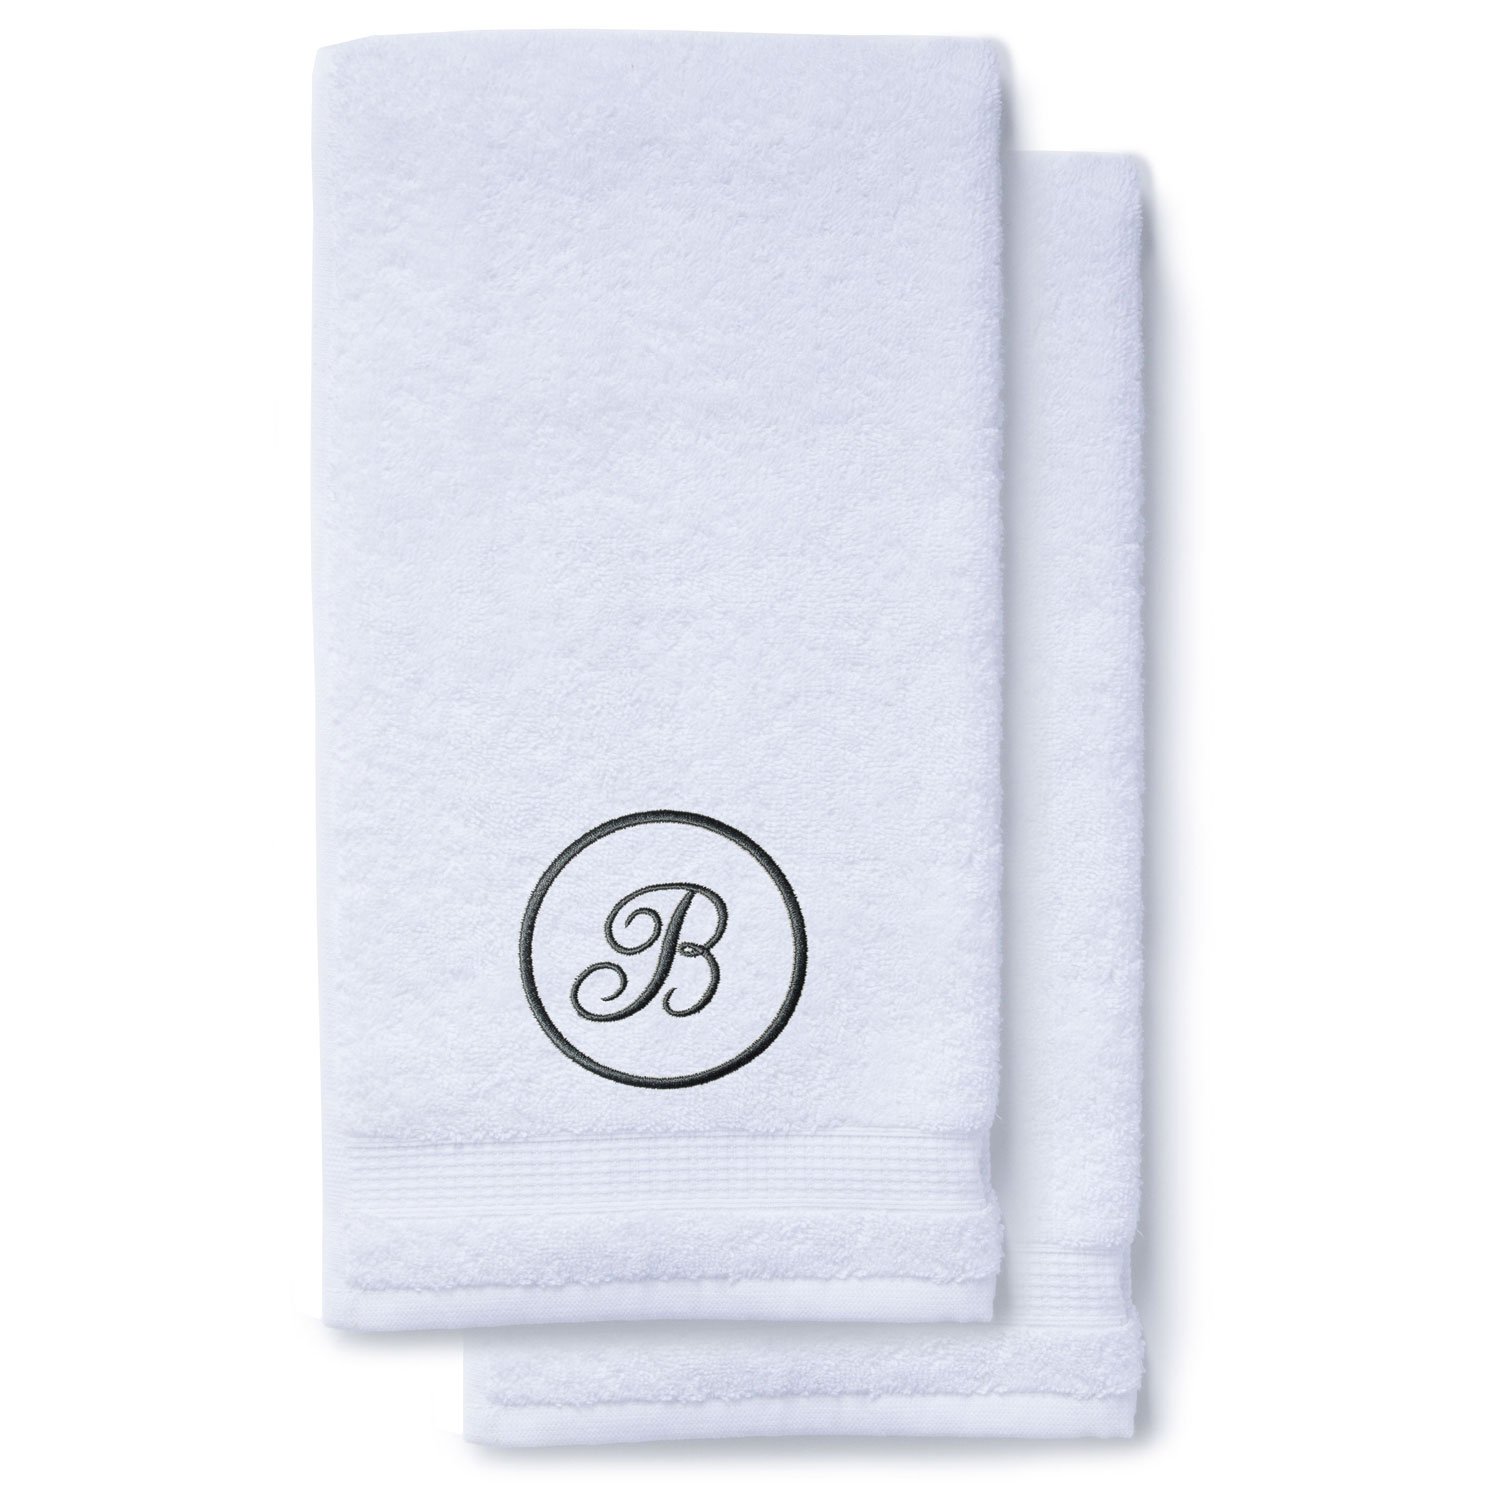 Charcoal Gray Initial Premium Hand Towel Script 16 X 30 Inch, Set of 2-Robemart.com